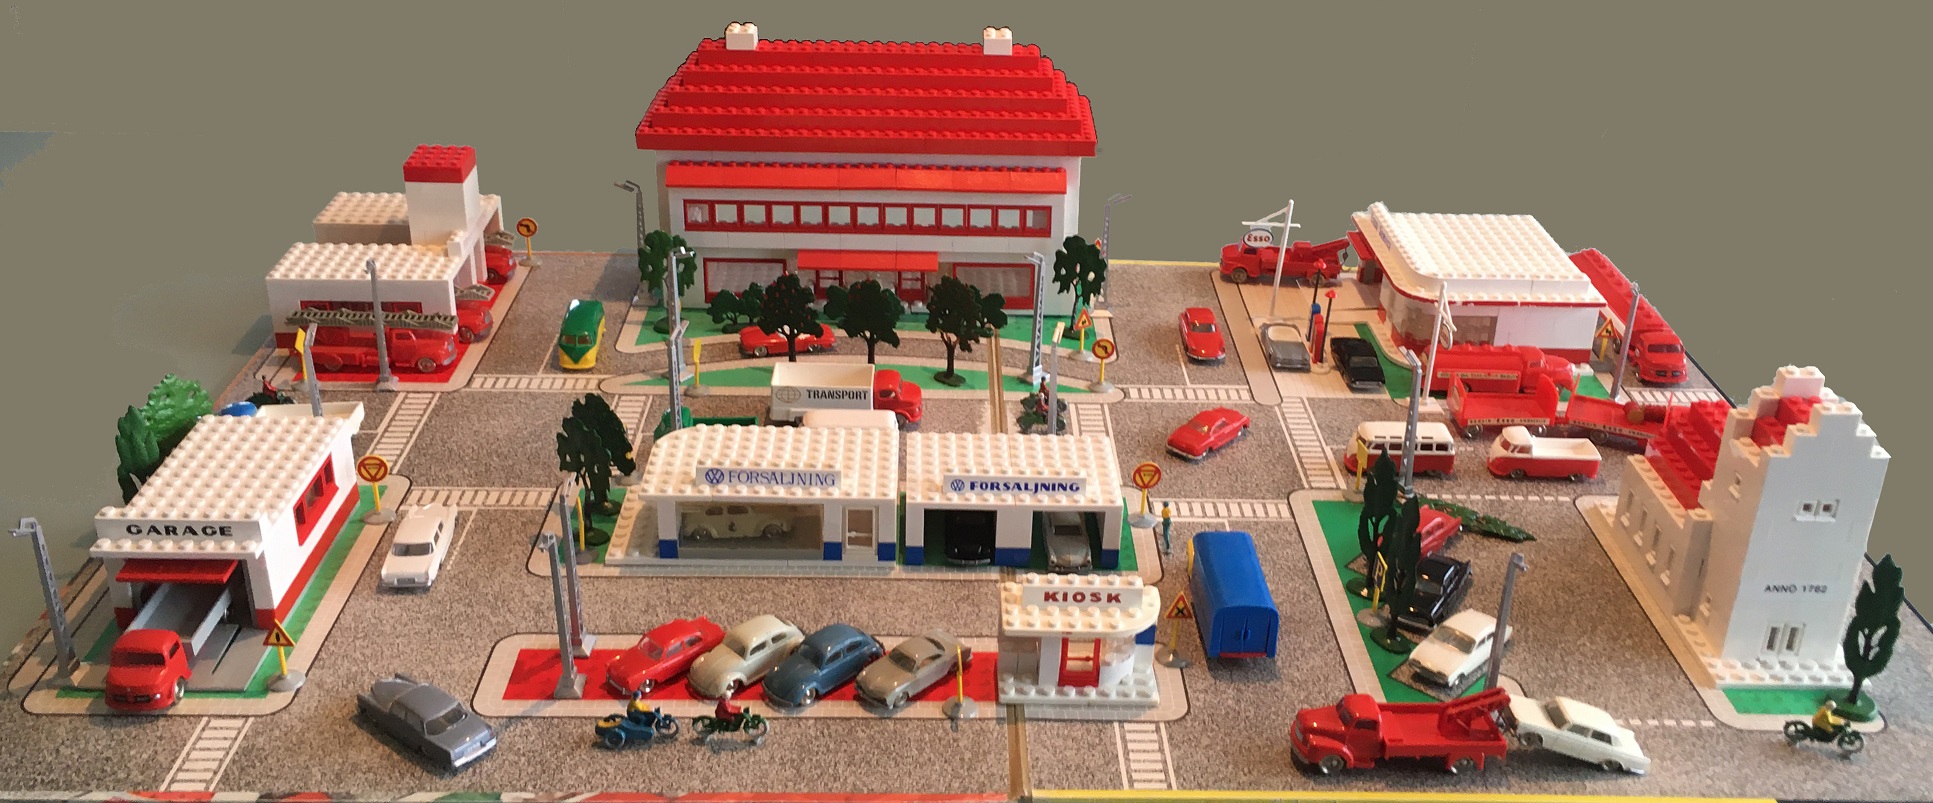 Lego 50-tal.jpg